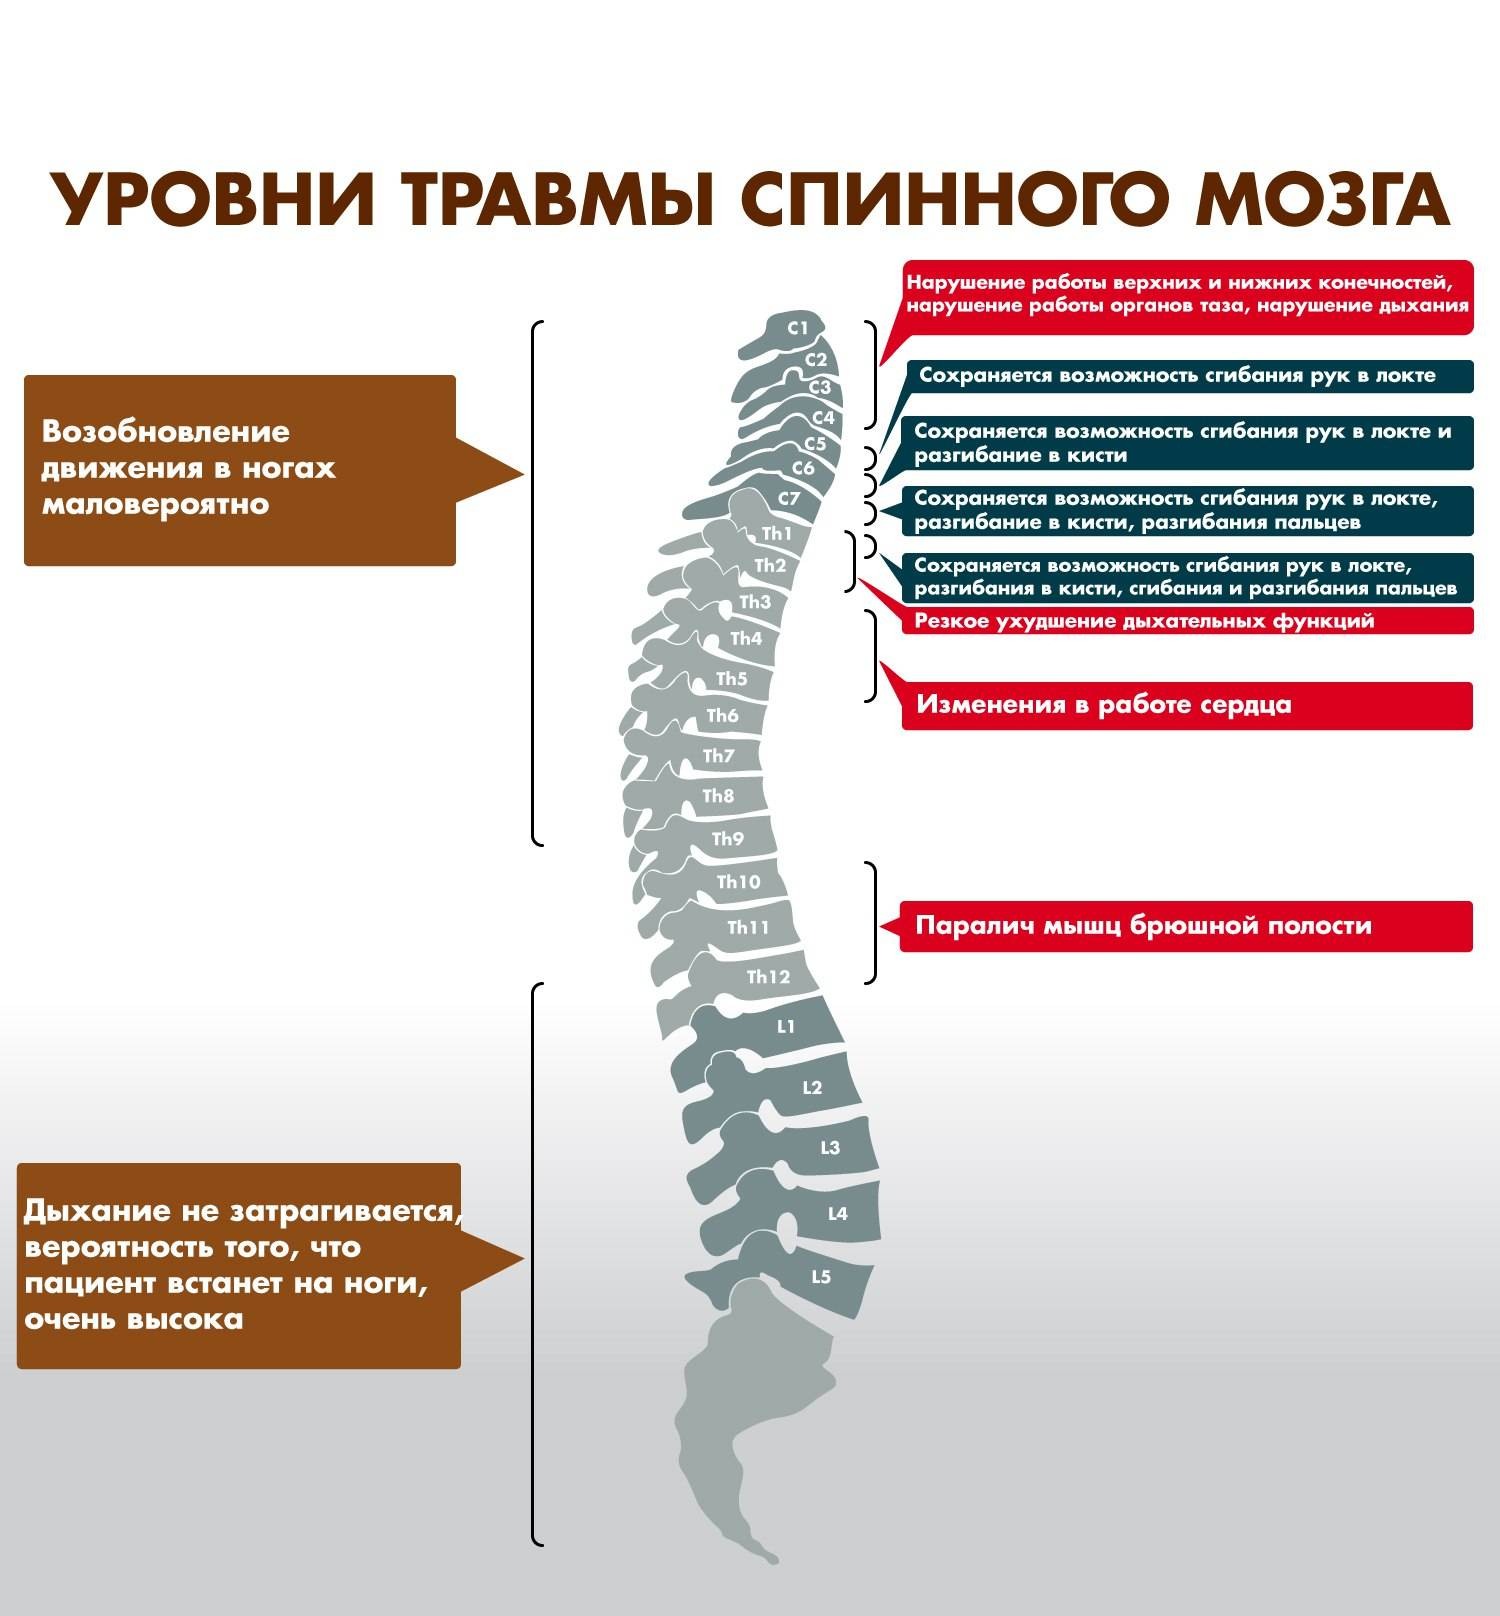 Отдел разрыв. Разрыв спинного мозга уровень. Травматические повреждения спинного мозга. Травма позвоночника с повреждением спинного мозга. Отделы спинного мозга шейный спинной.